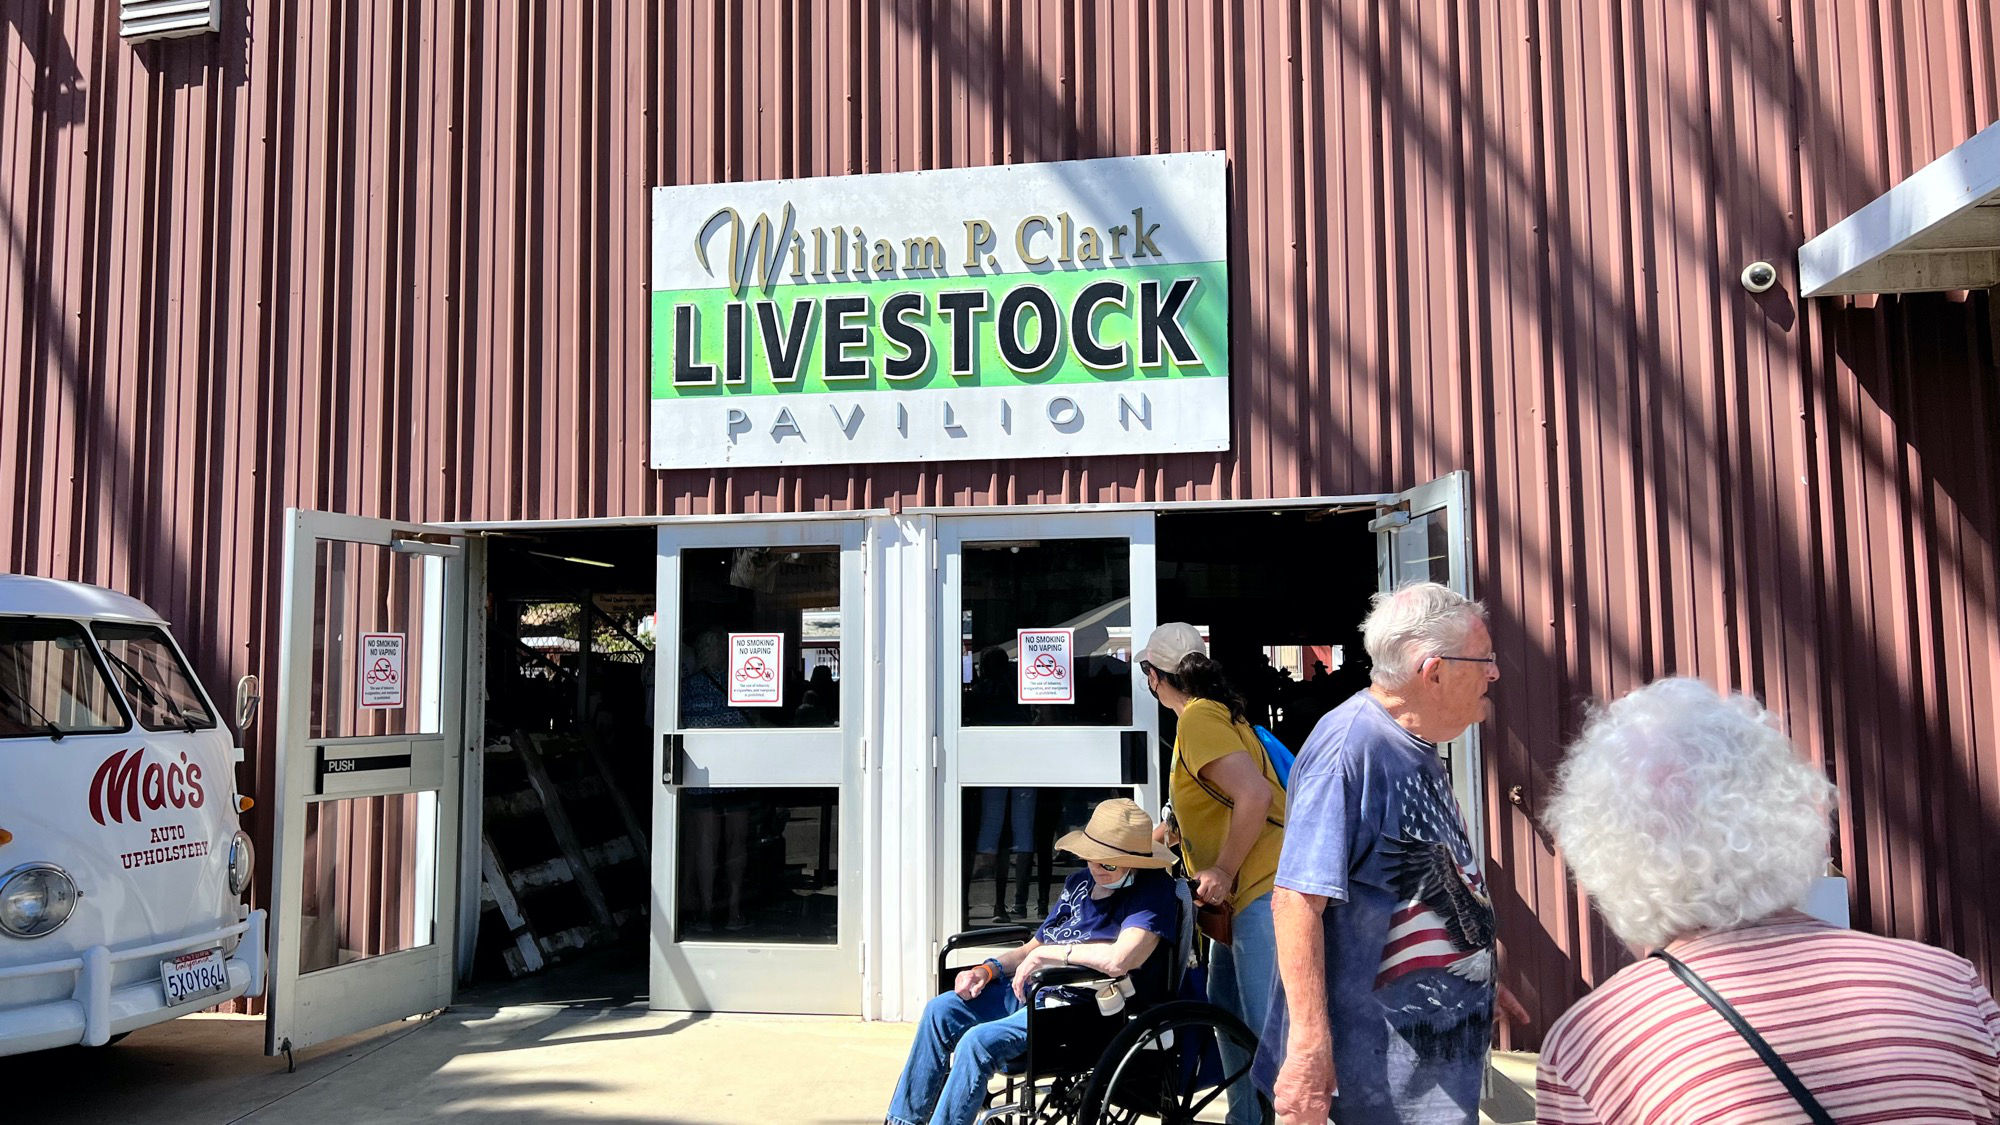 Livestock Pavilion William R Clark